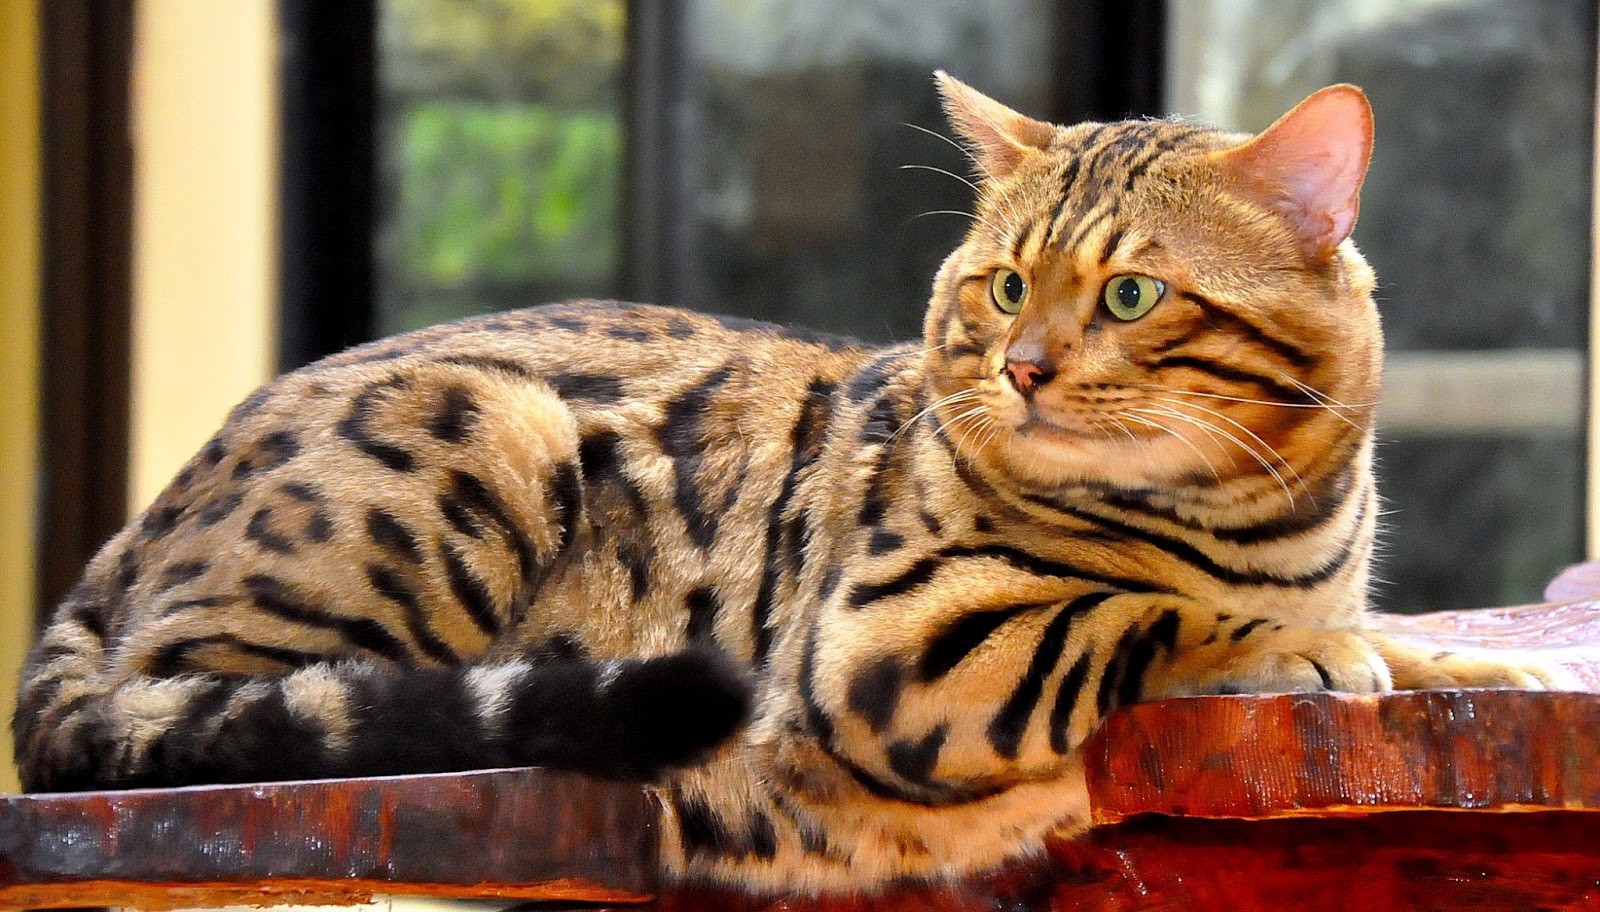 Kucing Bengal, Memelihara Macan Kecil di Rumah. - MAJU JAYA